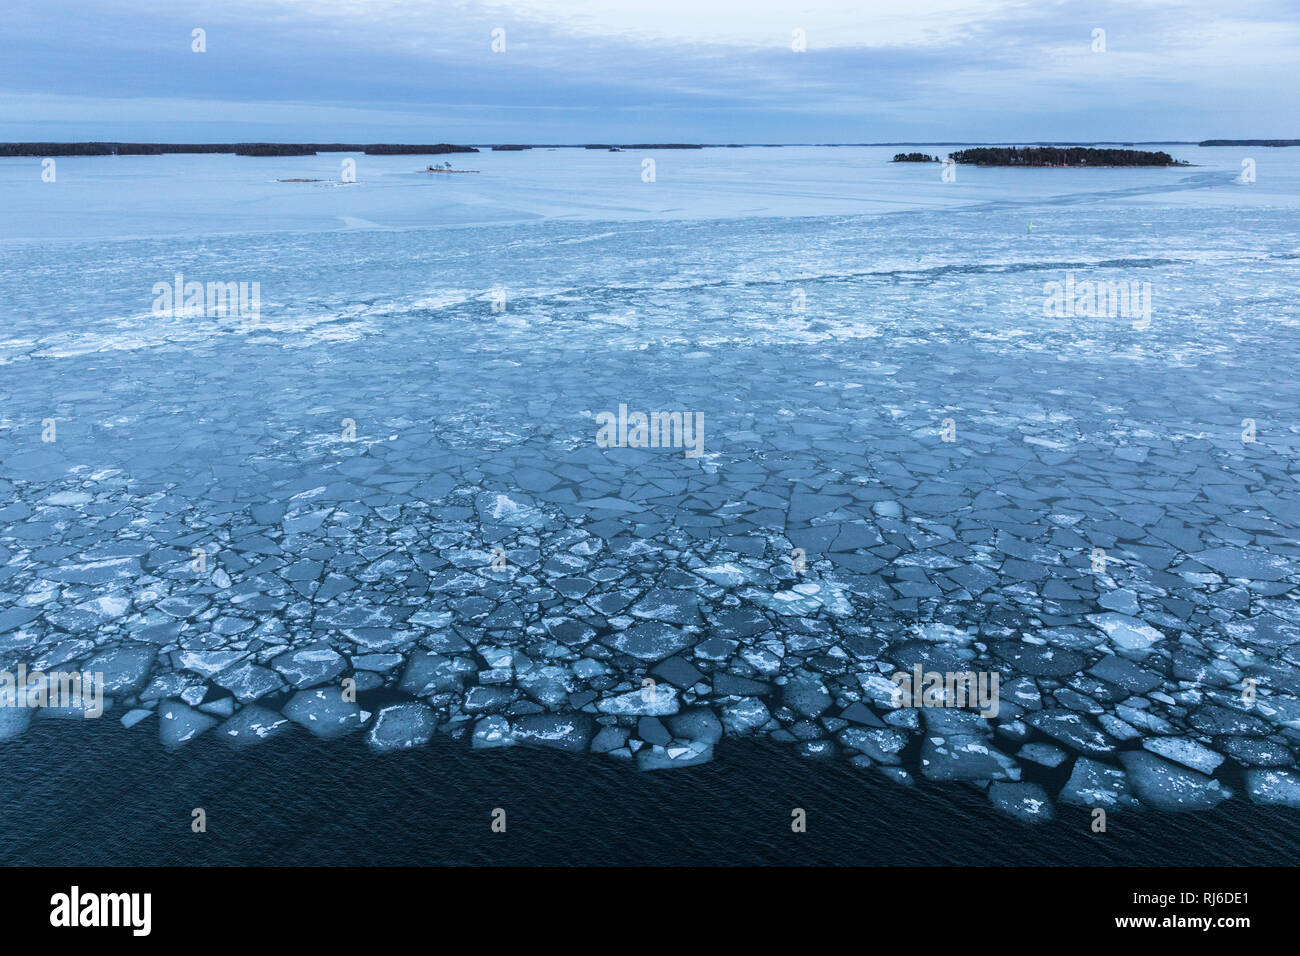 Finlande, Helsinki, Eisschollen auf der Ostsee mit Landschaft Banque D'Images